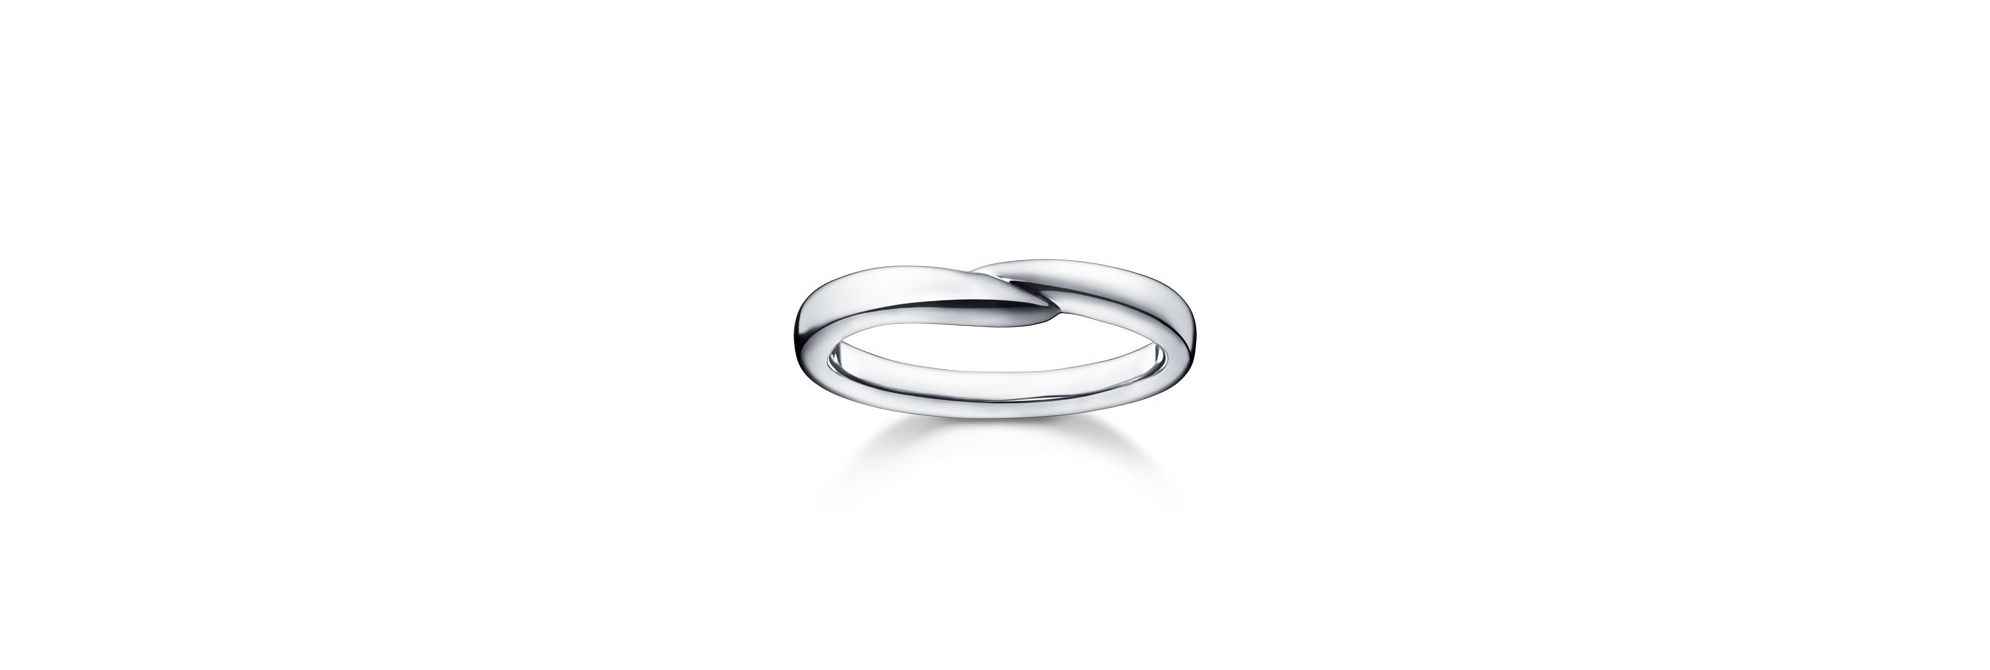 スティーレ ライン リング RK-4139-PT950|結婚指輪/STILE|TASAKI